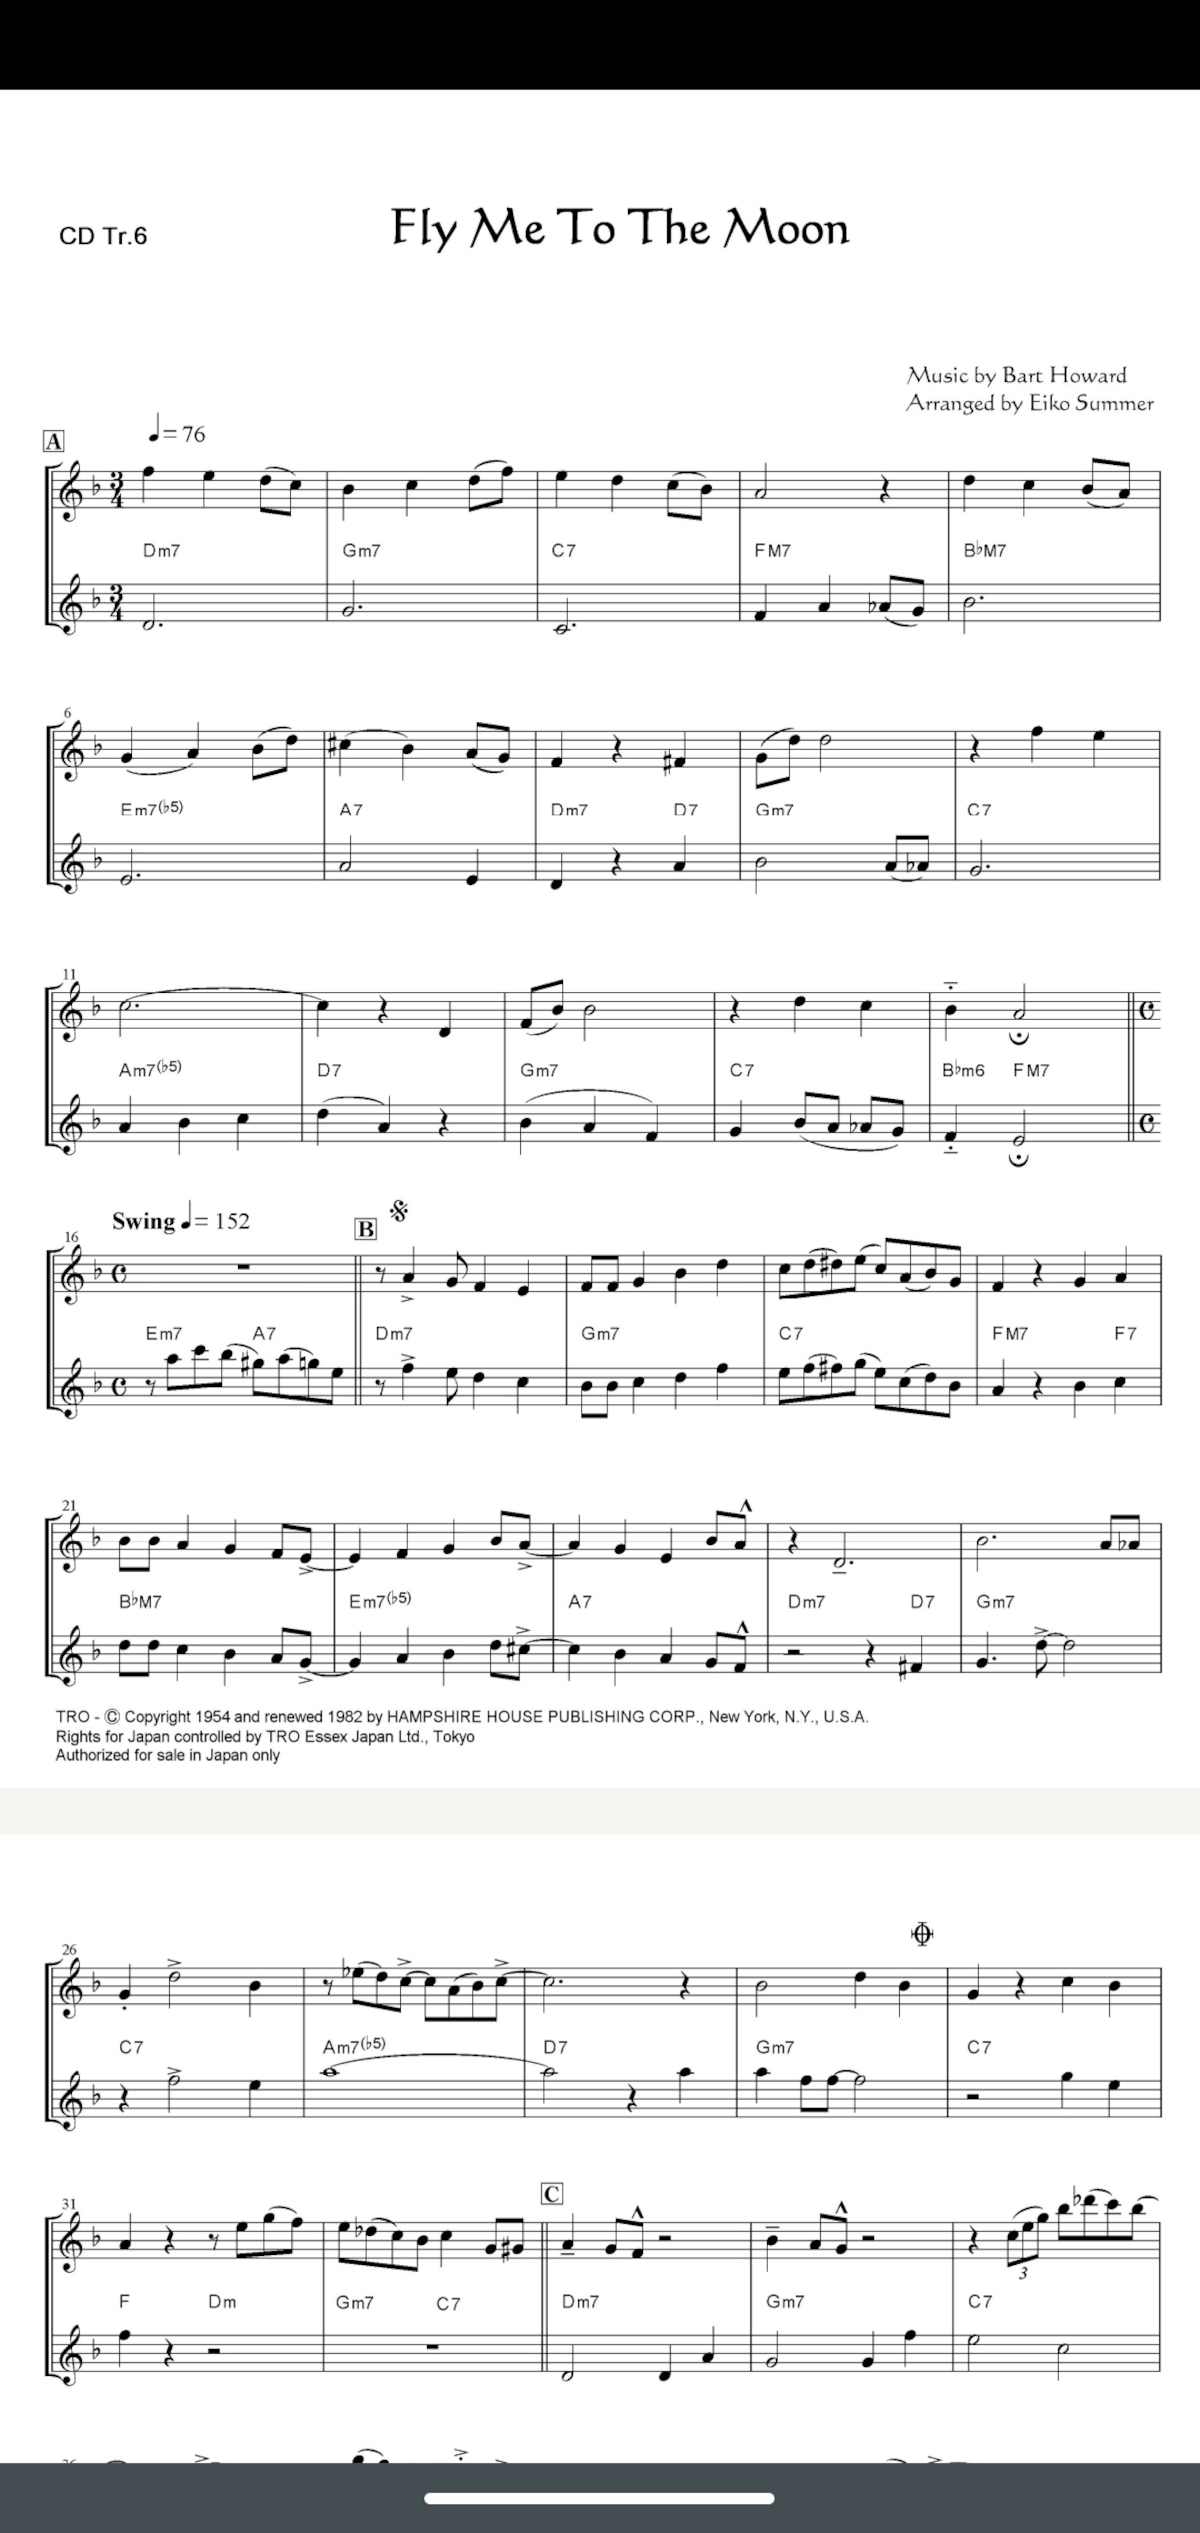 フルート バイオリン ピアノ ②デサフィナードトリオ 楽譜 - 本